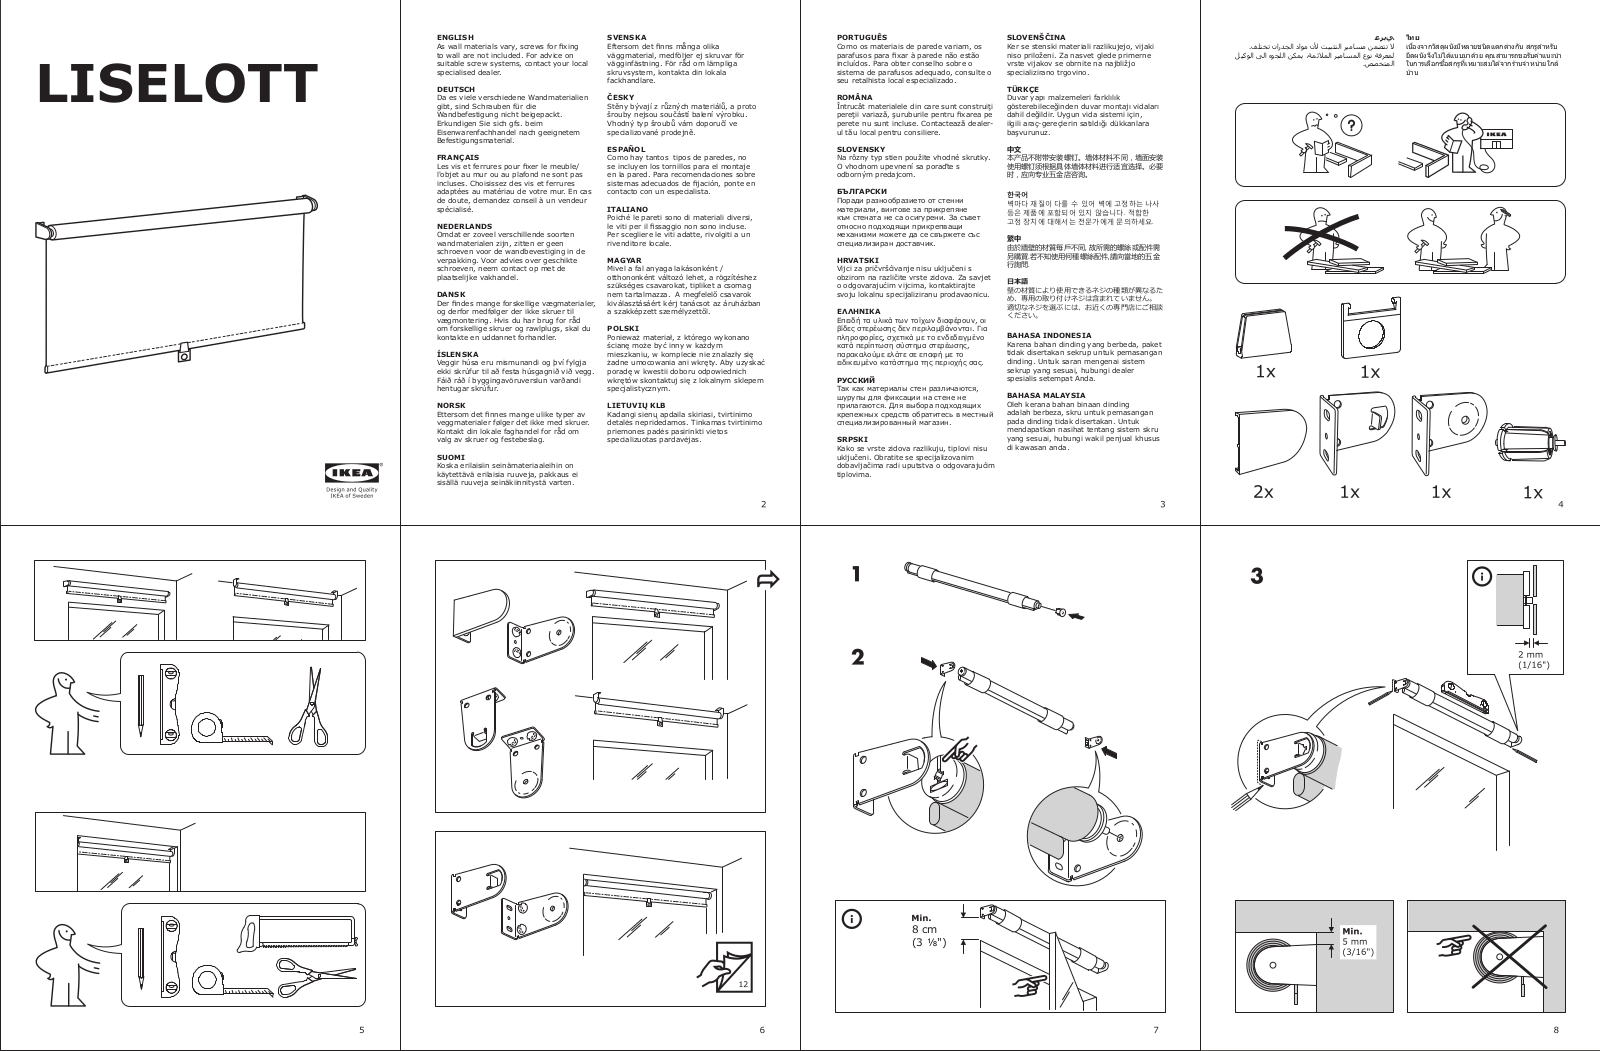 IKEA LISELOTT User Manual